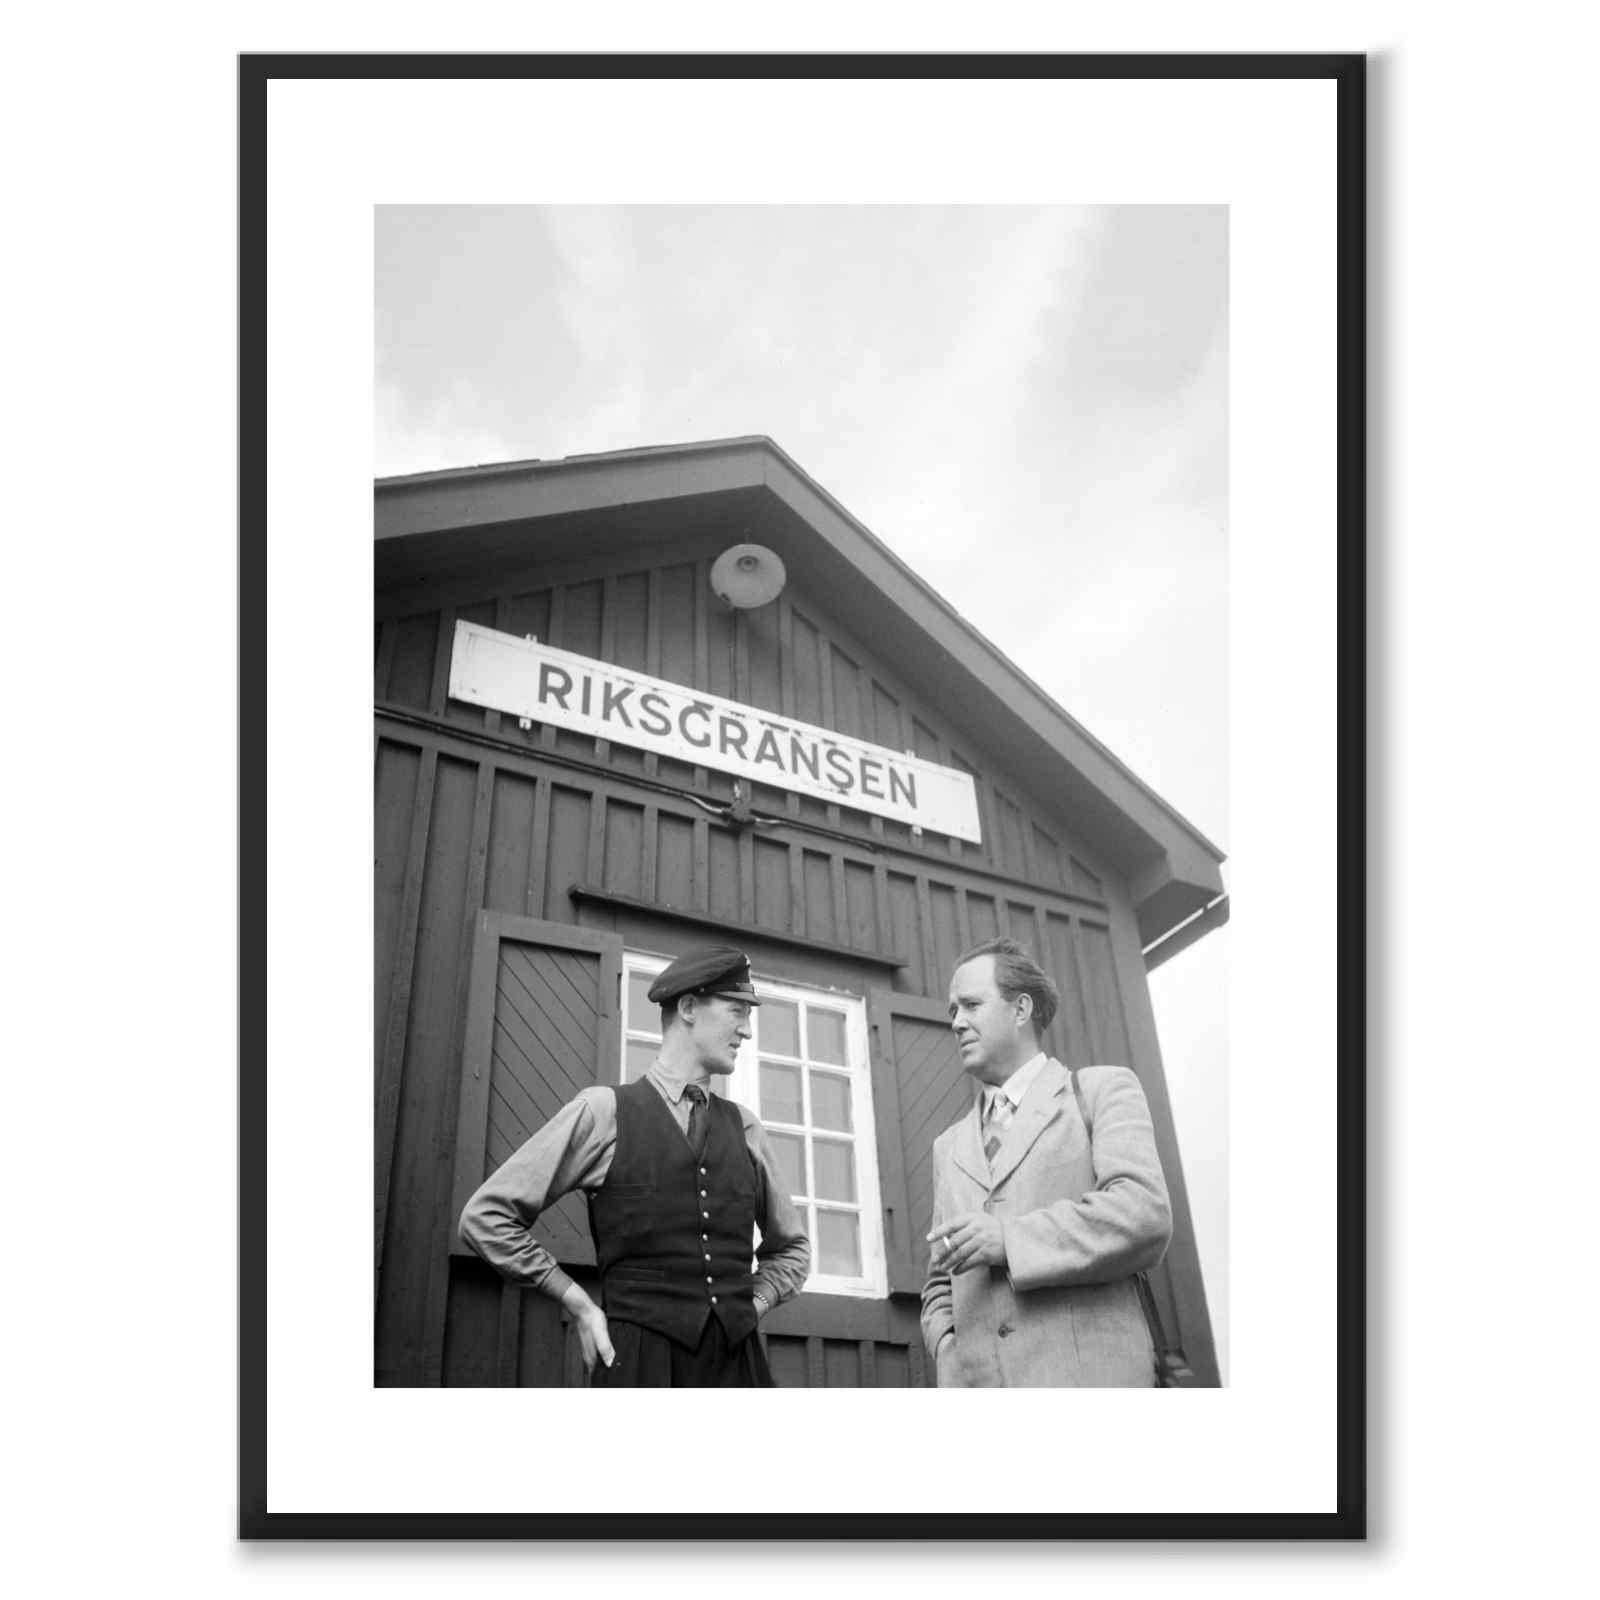 Riksgränsens Stationshus 1950